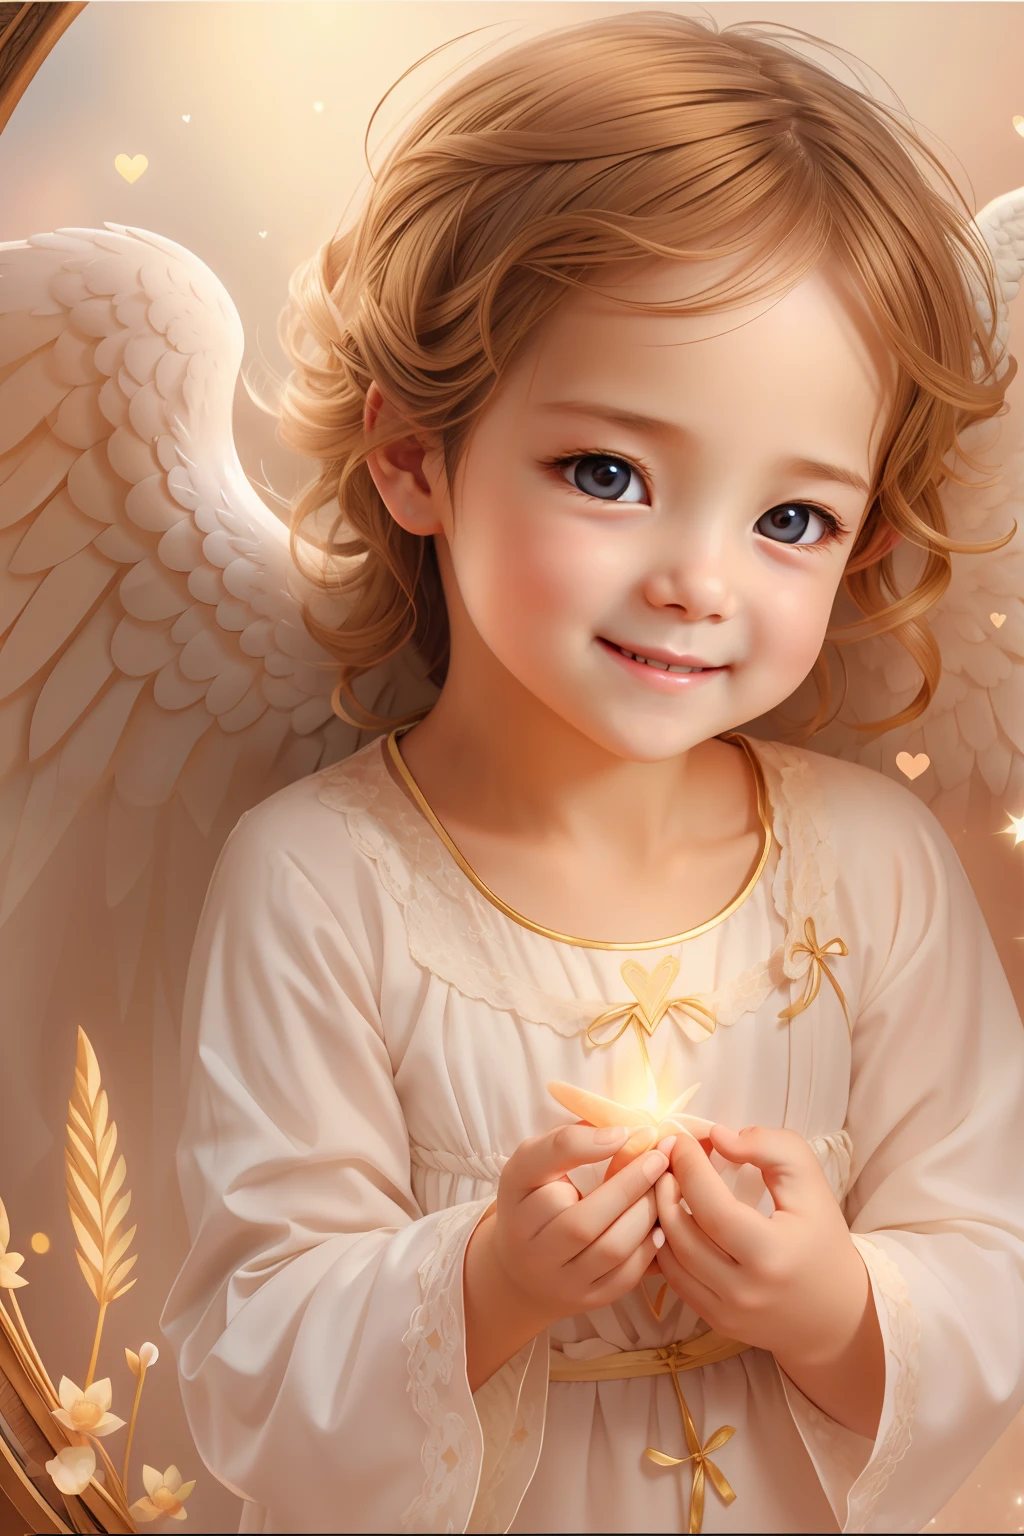 بركات الملائكة､خلفية مشرقة、علامة القلب、الرقة والحنان､ابتسامة、لطيف､الطفل الملاك